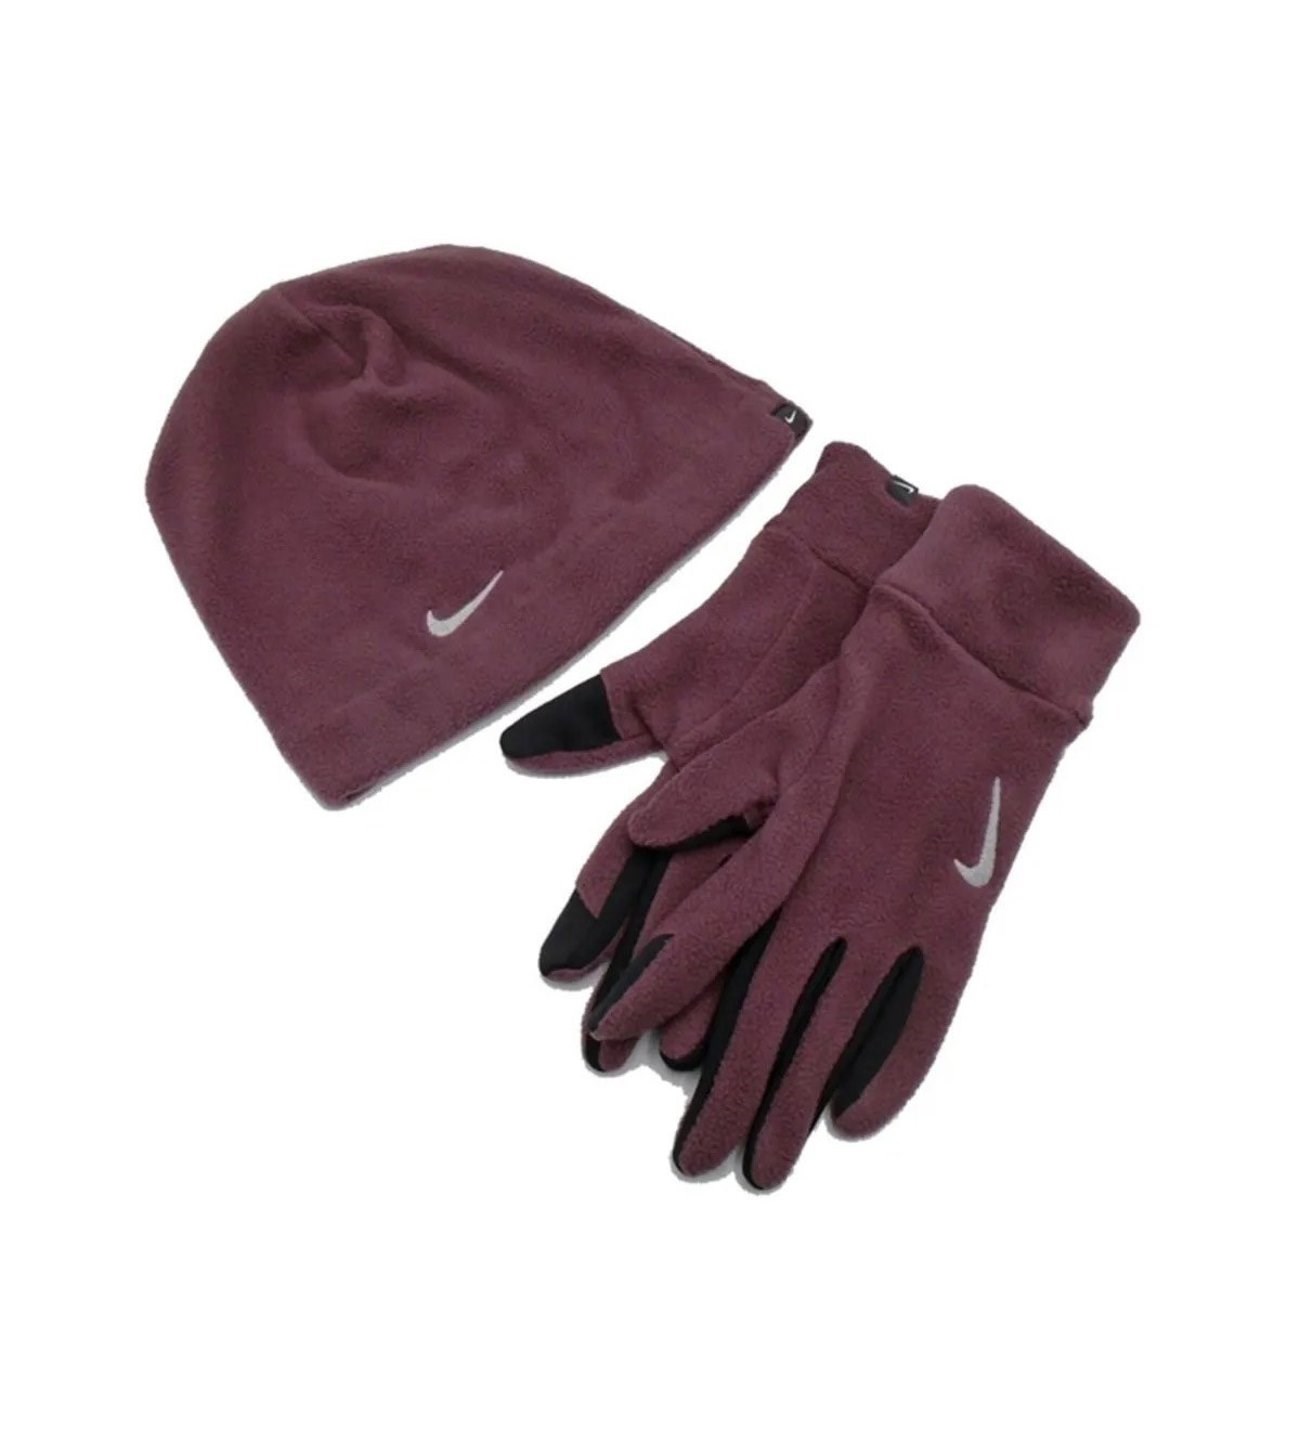 Nike W Fleece Hat And Glove Set Dark Wine - Dark Wine - Silver